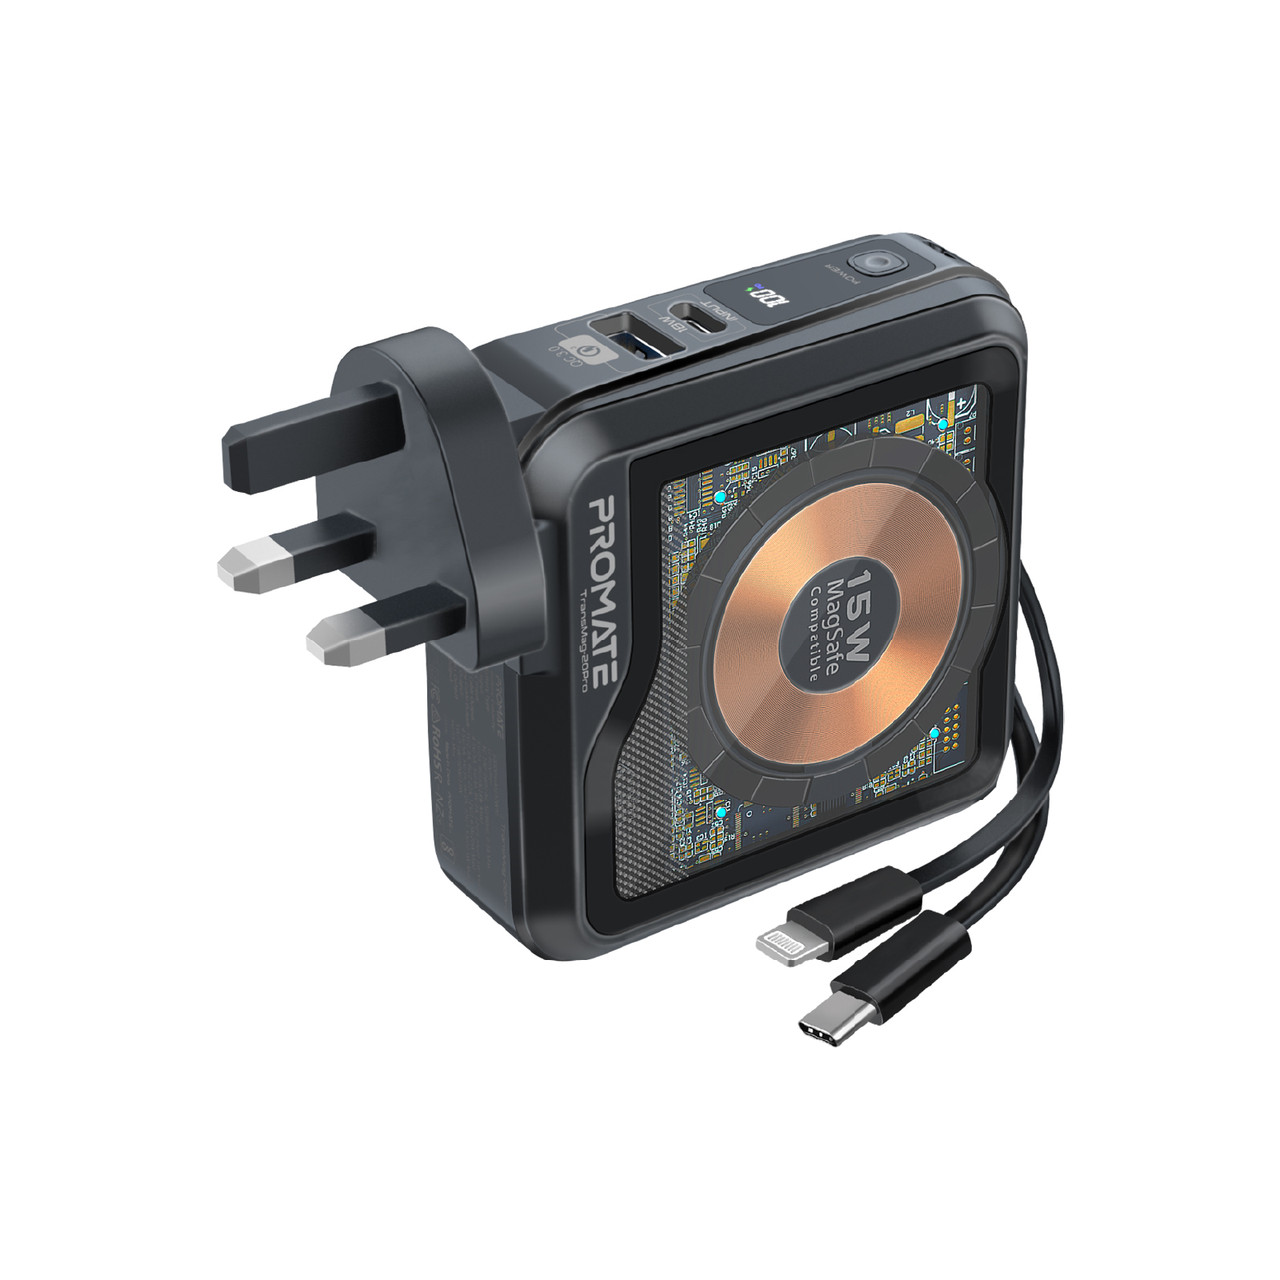 УМБ Promate TransMag-20Pro 10000 mAh, USB-A, USB-С кабель, Lightning коннектор, Qi, Black (transmag-20pro.black)